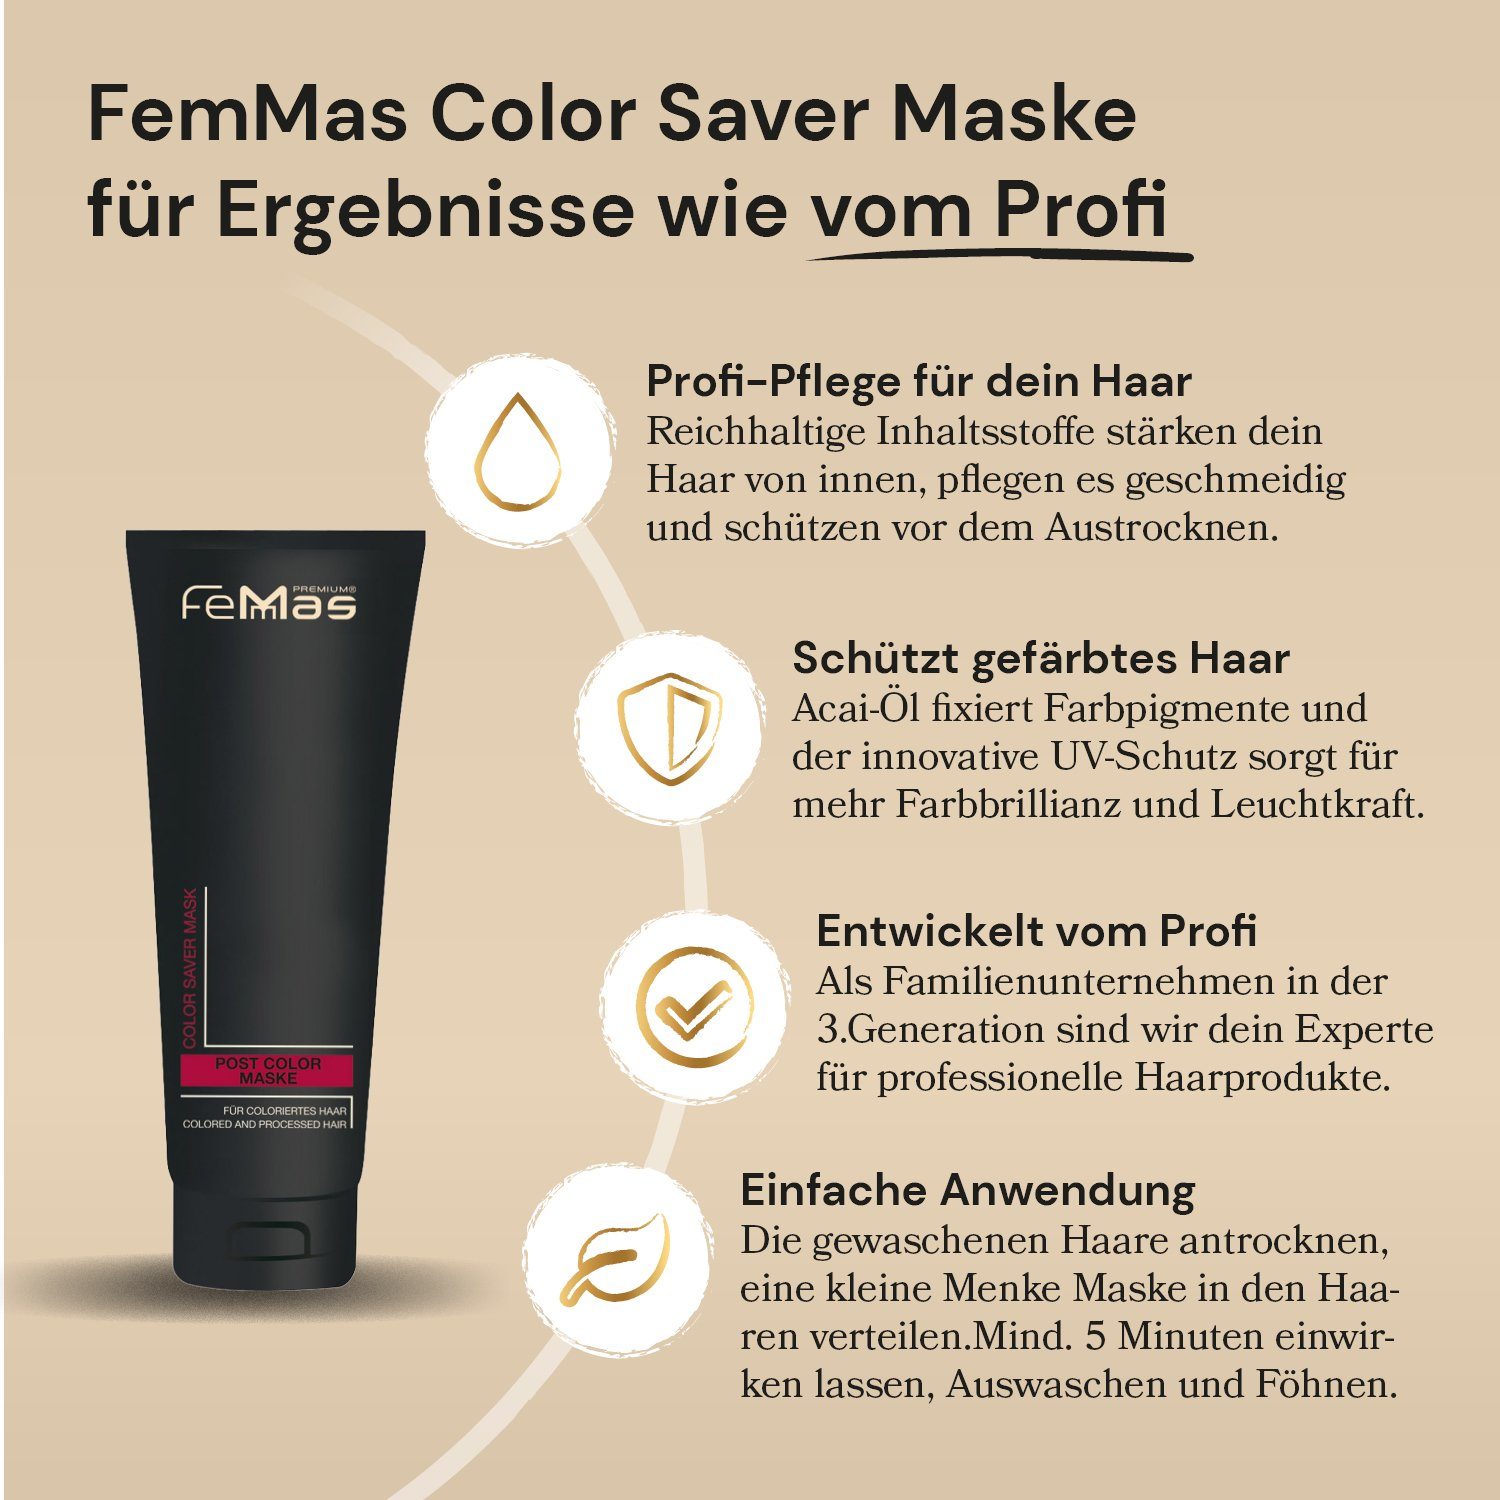 Color Premium Color Haarpflege-Set FemMas Saver Saver Shampoo 250ml Maske 250ml + Femmas